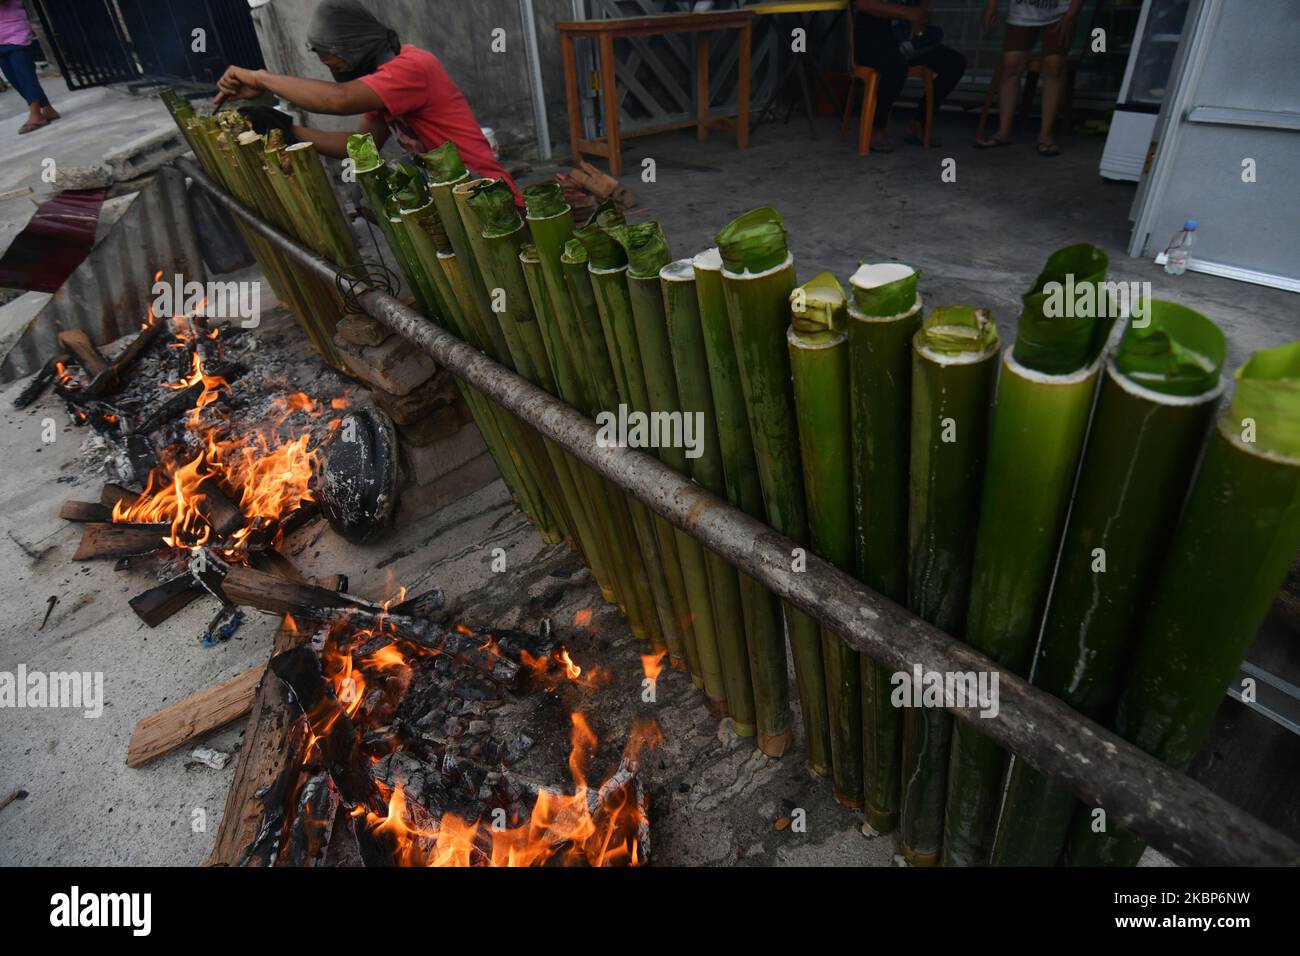 Am 23. Mai 2020 rösten die Bewohner in Palu, Provinz Zentral-Sulawesi, Indonesien, Reis, gemischt mit traditionellen Gewürzen und in Bambus gefüllt. Bambusreis ist eine der kulinarischen Spezialitäten, die von der lokalen Gemeinschaft bei Eid-Feiern präsentiert werden. Obwohl die Gemeinschaft von der COVID-19-Pandemie betroffen war, begrüßte sie die Feier von Eid al-Fitr, die am Sonntag (5/23/2020) mit lebhafter Atmosphäre stattfand. (Foto von Mohamad Hamzah/NurPhoto) Stockfoto